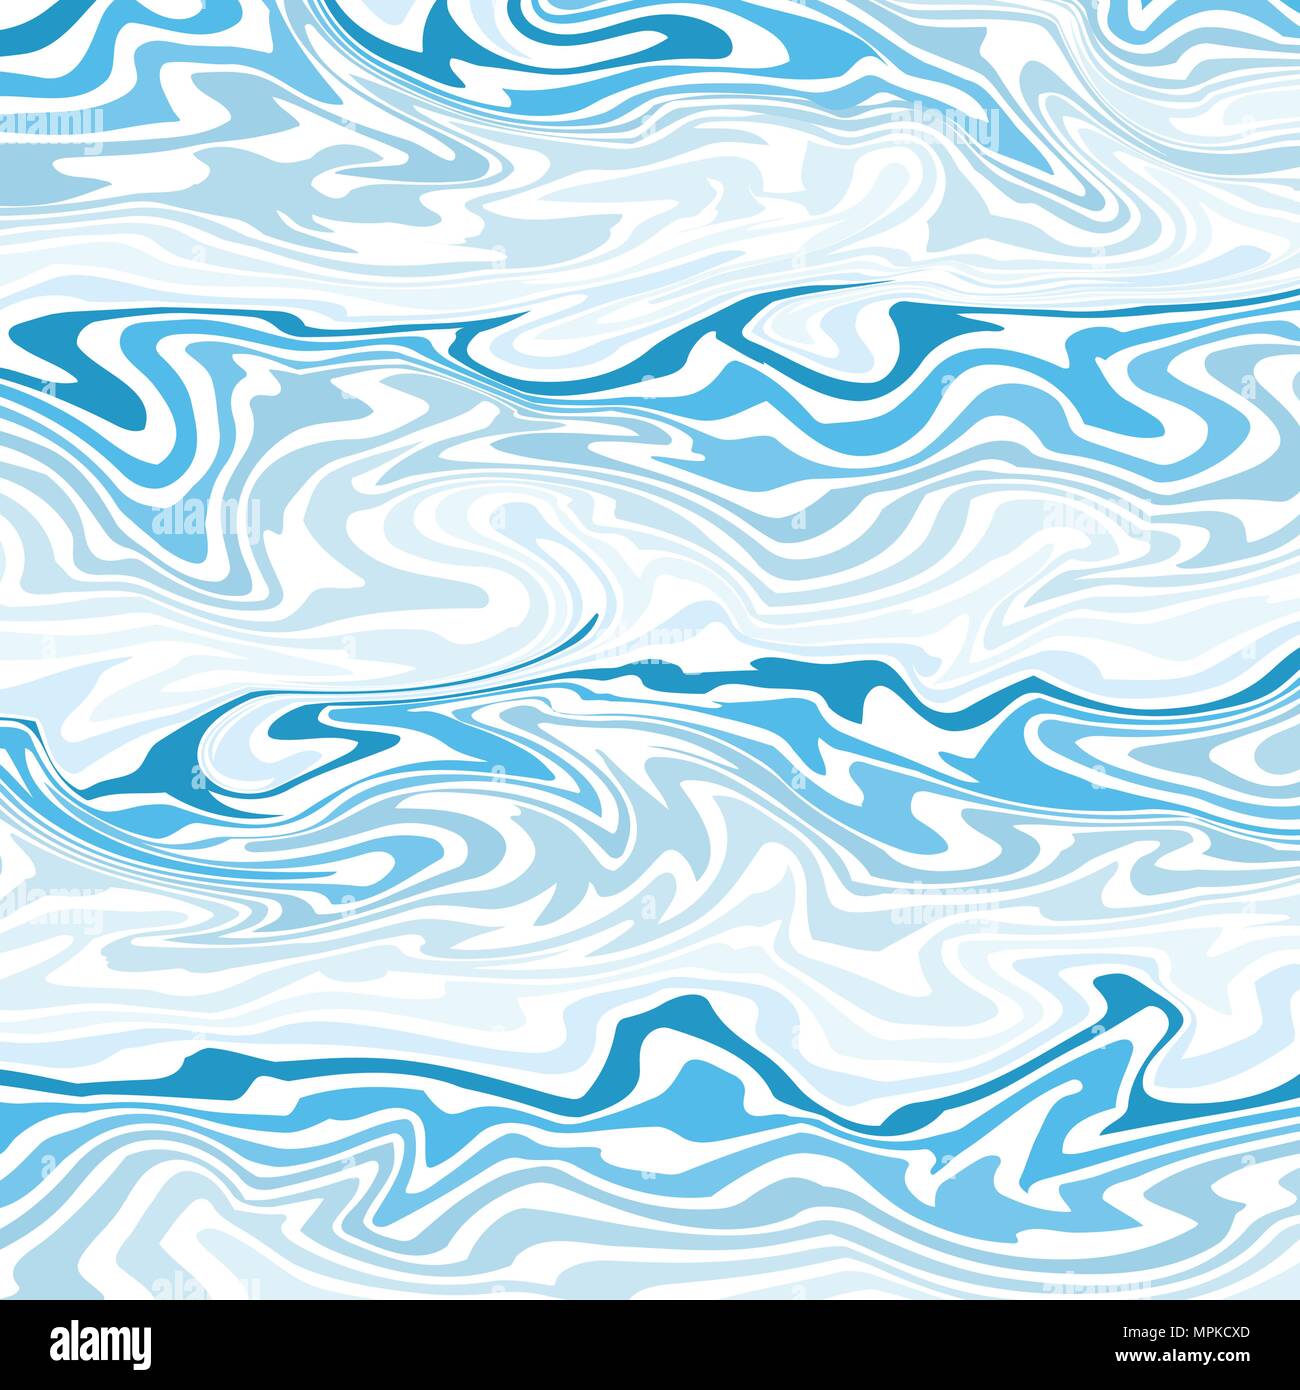 Zusammenfassung von klare Welle Wasser von Marmor Hintergrund, Illustration Vector EPS 10. Stock Vektor